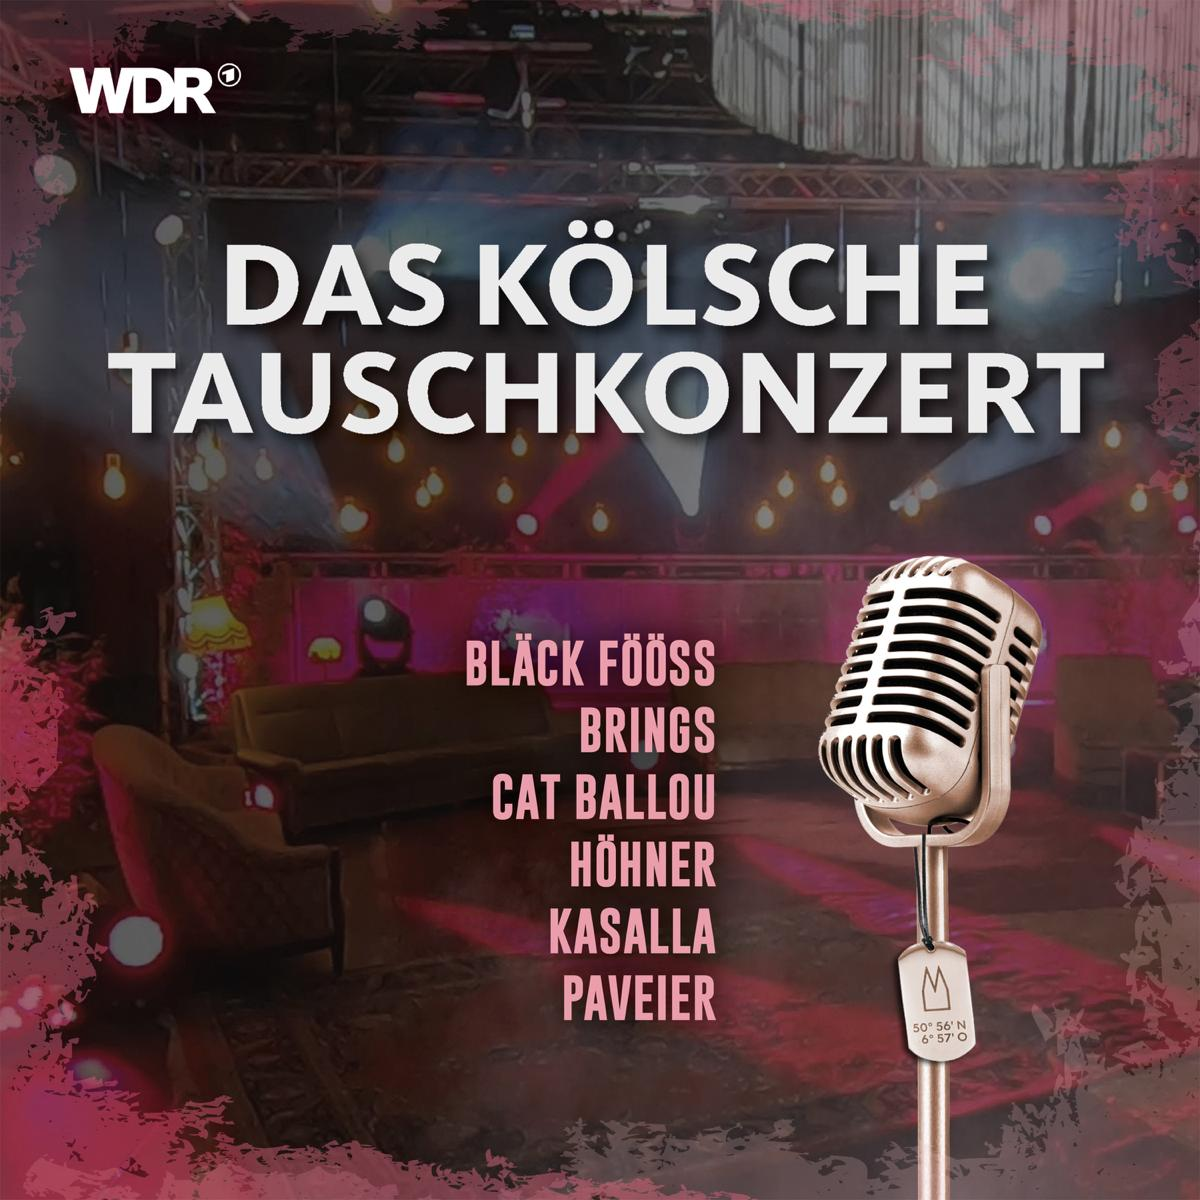 Tauschkonzert (CD) - Das Kölsche - VARIOUS